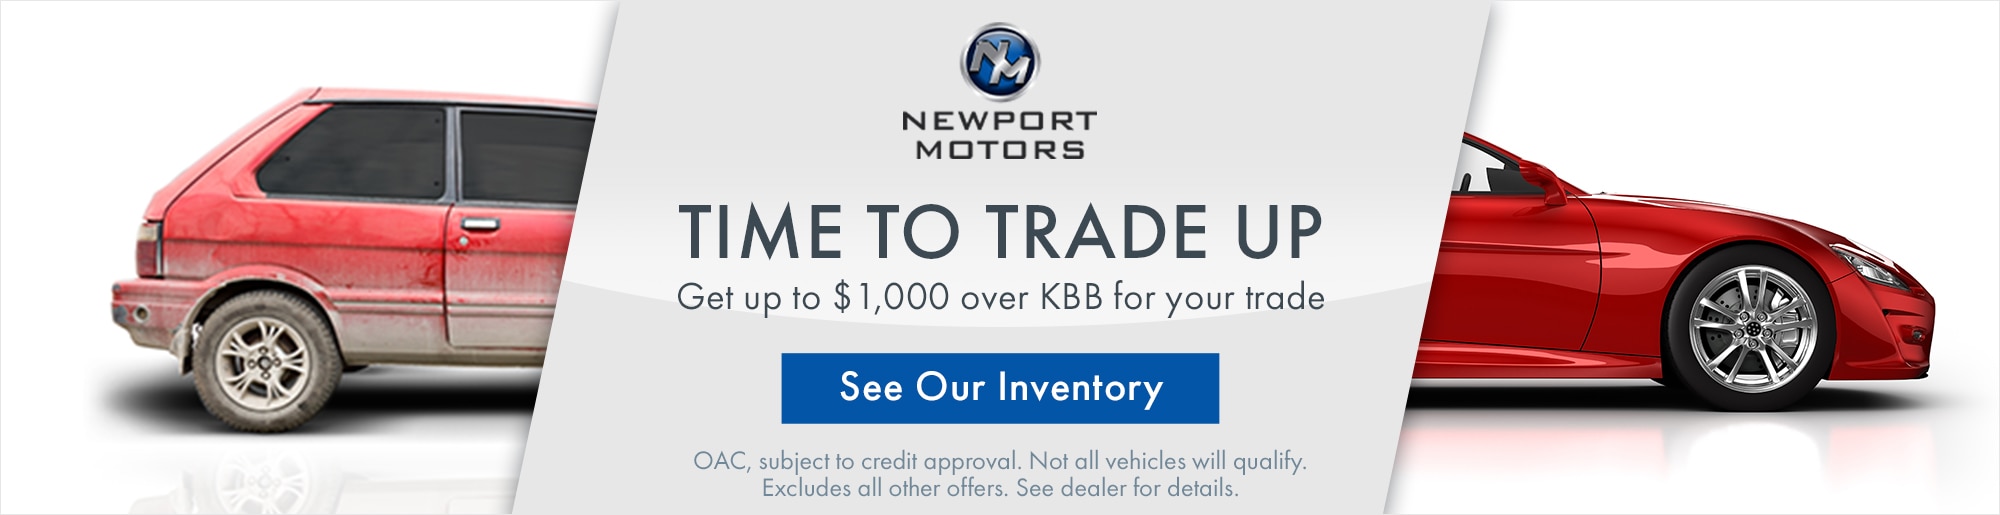 Las Vegas Used Car Dealership | Newport Motors of Las Vegas